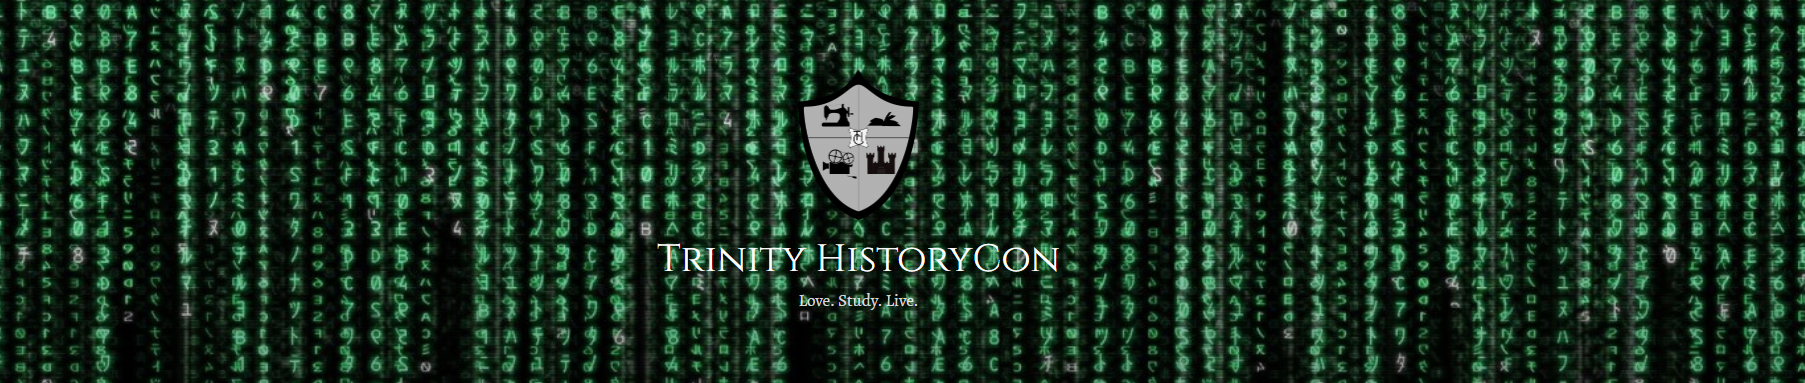 Trinity HistoryCon 3.0